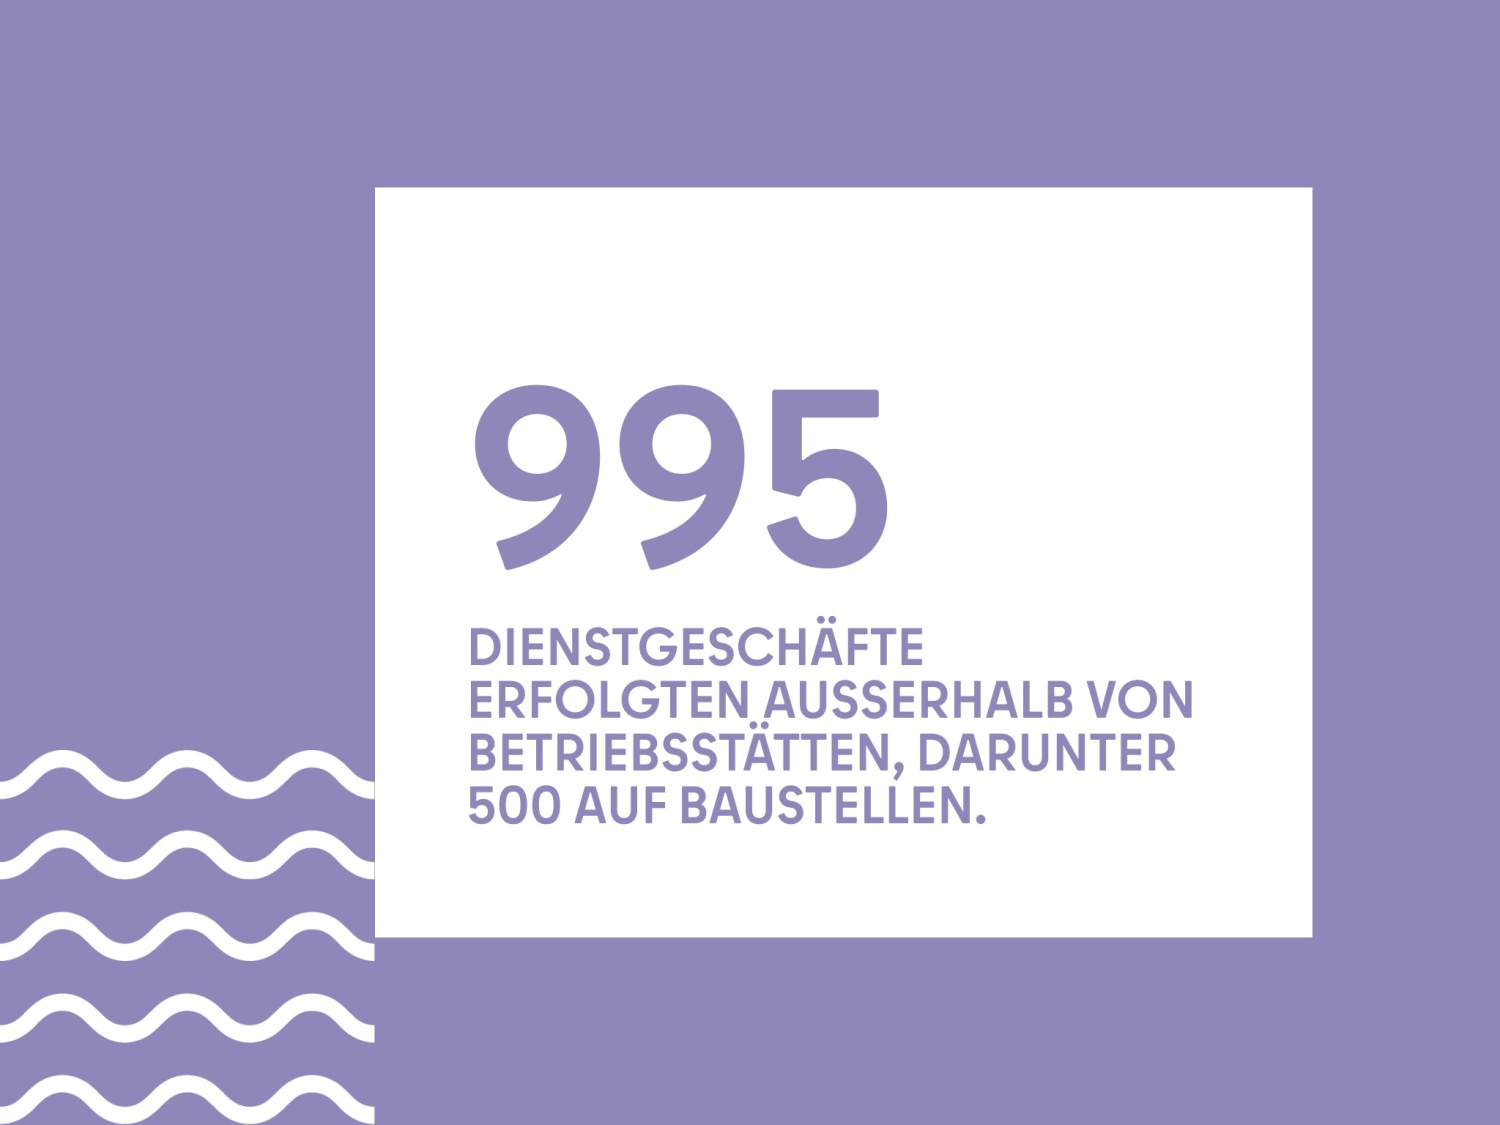 995 DIENSTGESCHÄFTE ERFOLGTEN AUSSERHALB VON BETRIEBSSTÄTTEN, DARUNTER 500 AUF BAUSTELLEN.